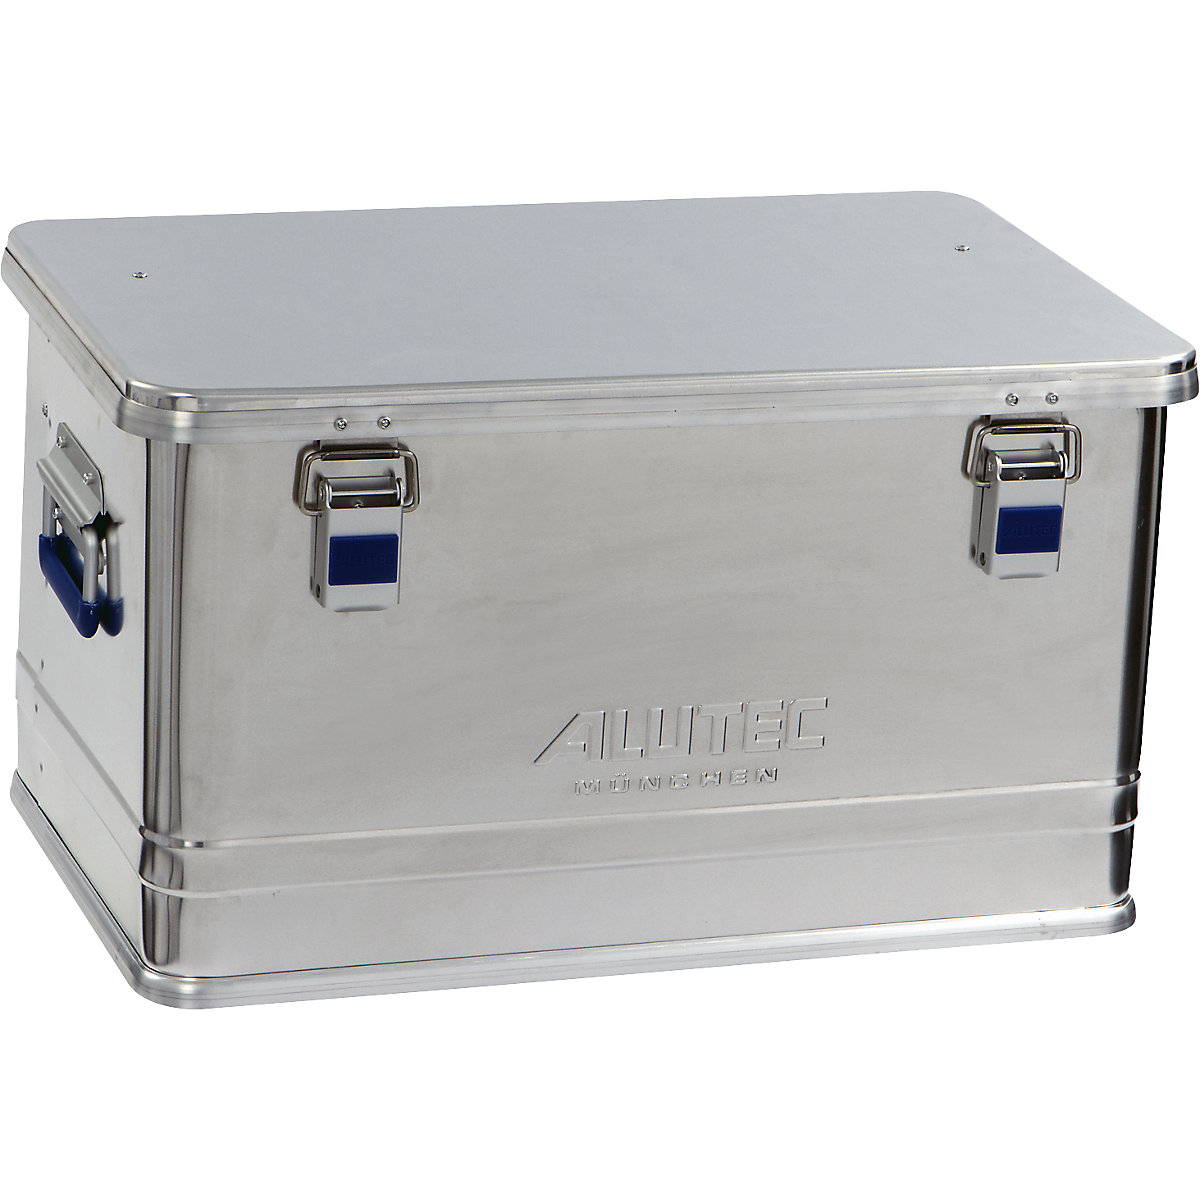 Aluminiumbox COMFORT